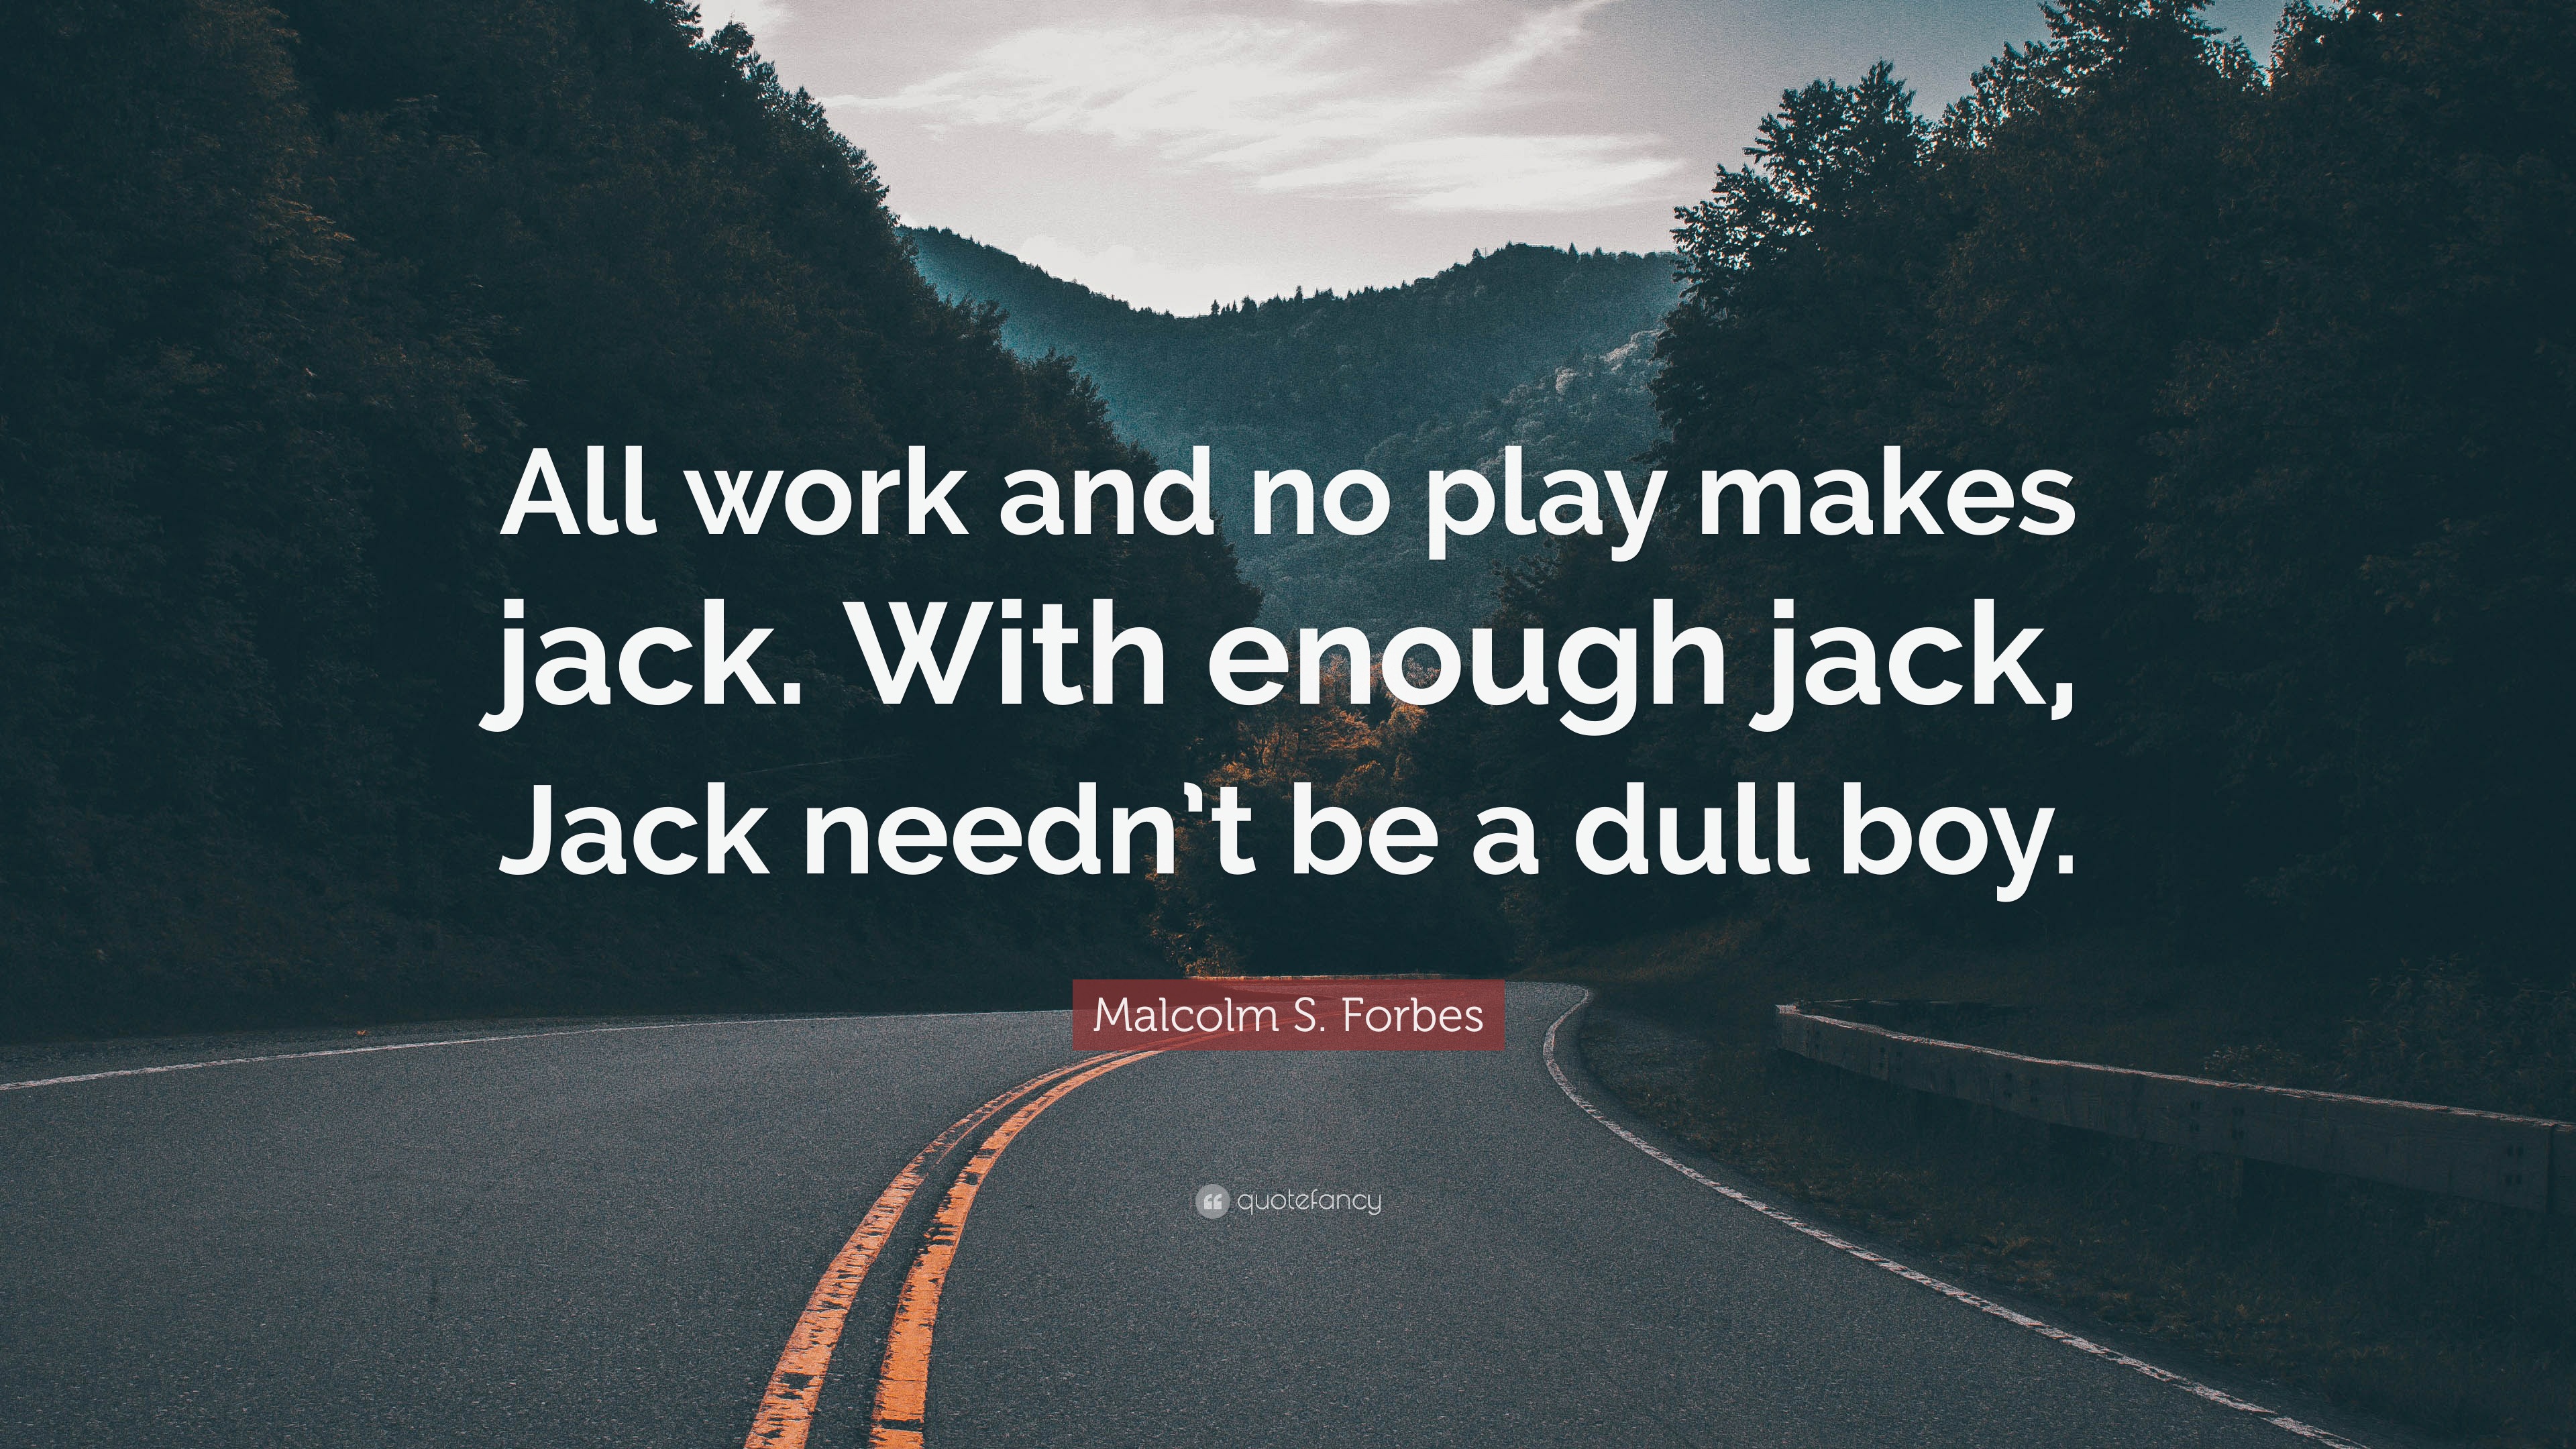 O que significa All work and no play makes Jack a dull boy.? - Pergunta  sobre a Inglês (Reino Unido)